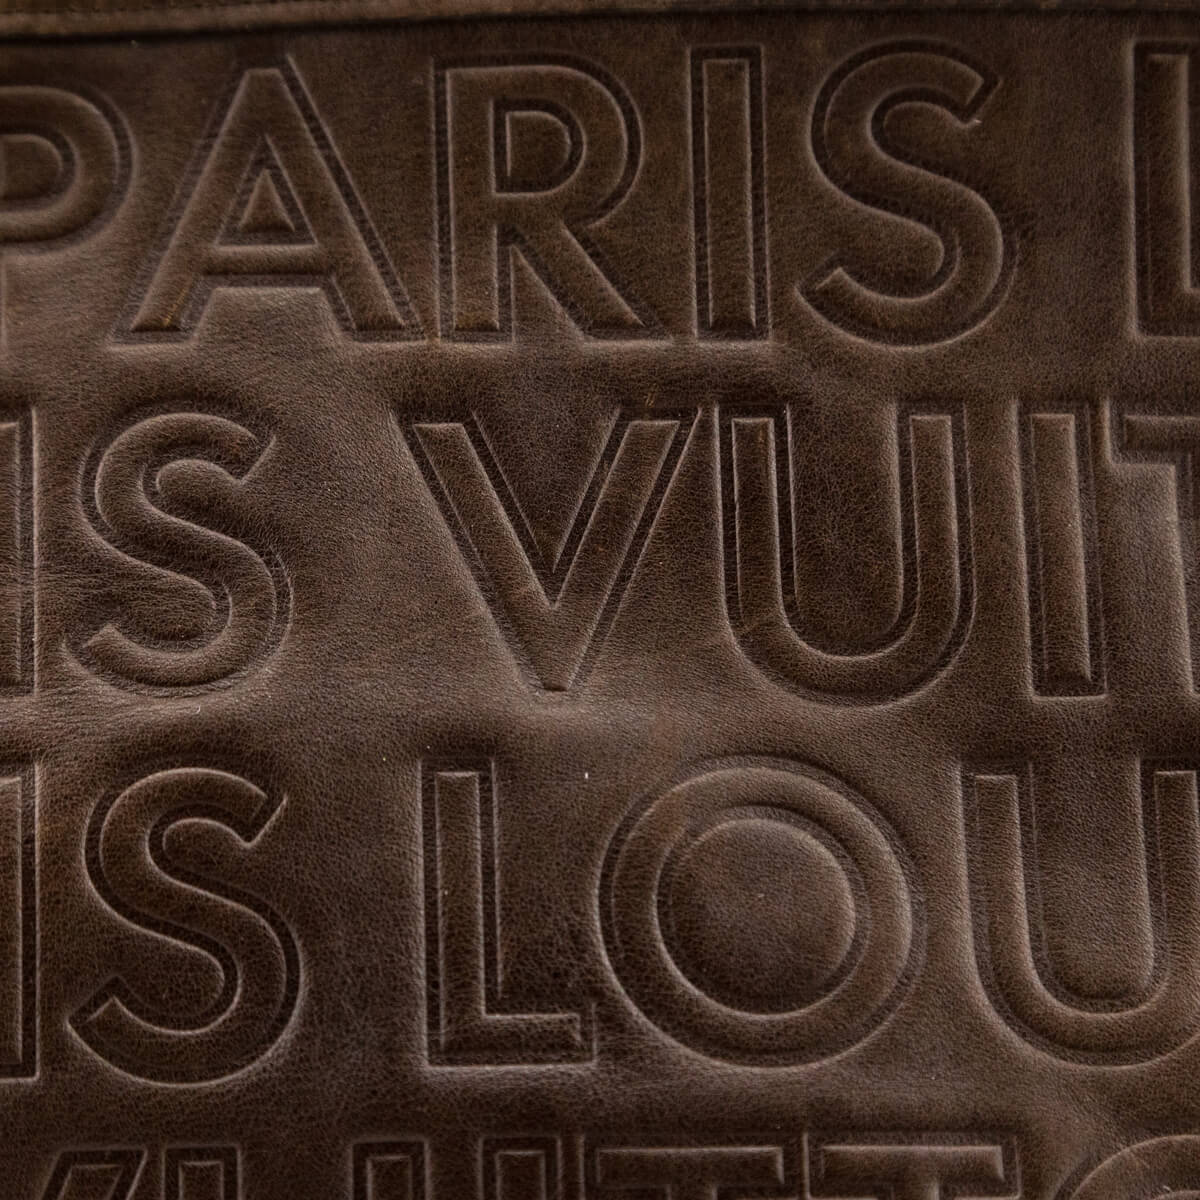 Louis Vuitton Paris Souple Whisper GM - Brown Shoulder Bags, Handbags -  LOU622489